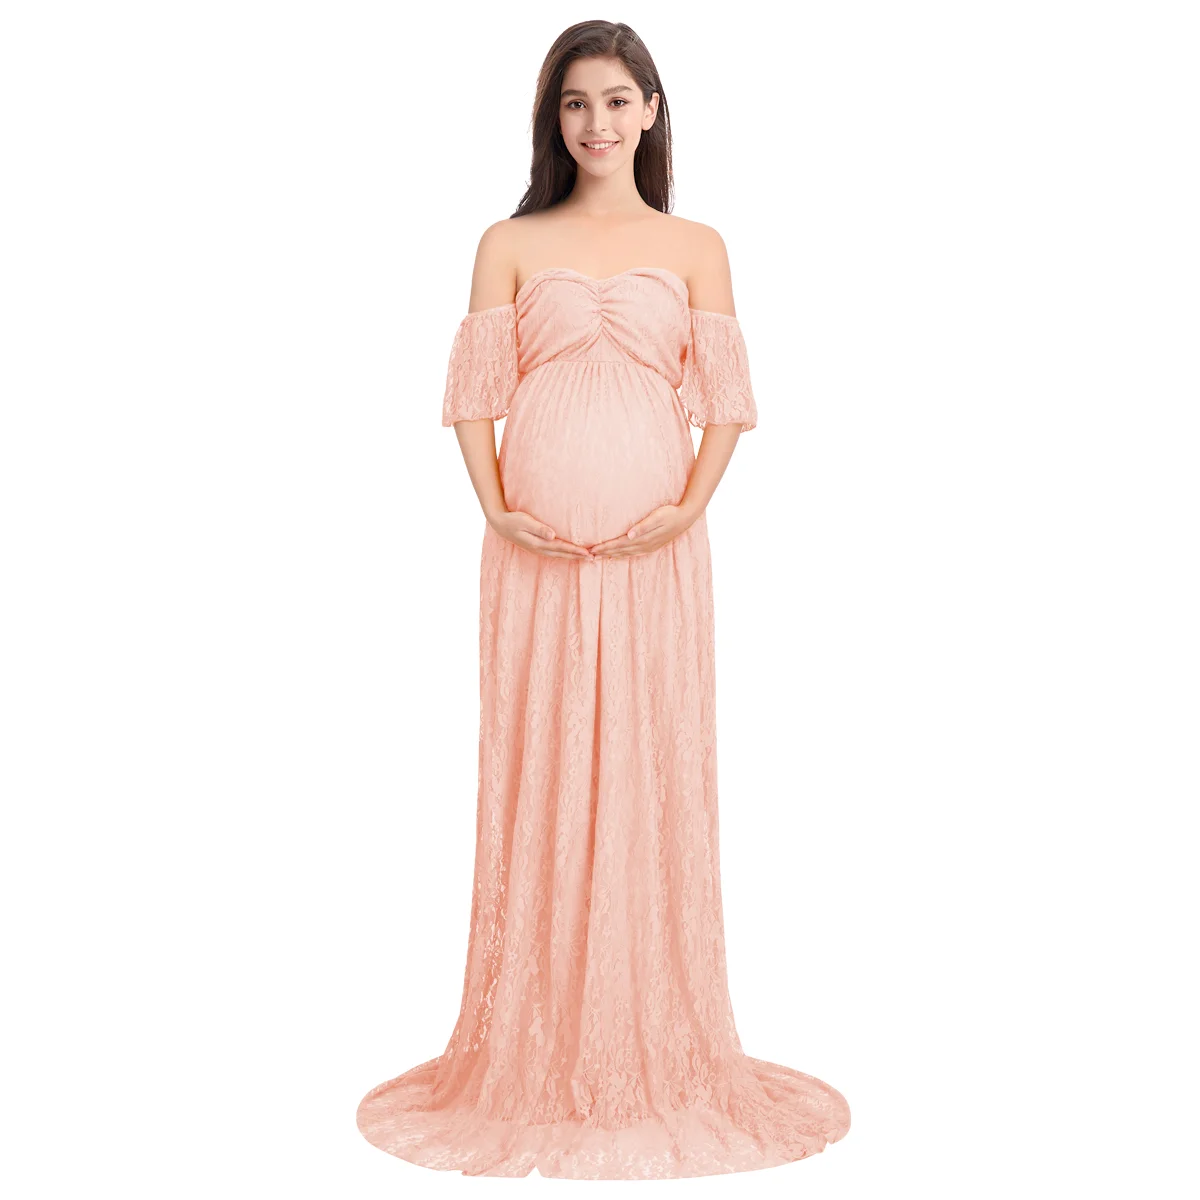 Платье для беременных длинное платье с длинным шлейфом для фотография беременной женщины свадебное платье для беременных Платья для фотосессии - Цвет: Light Pink